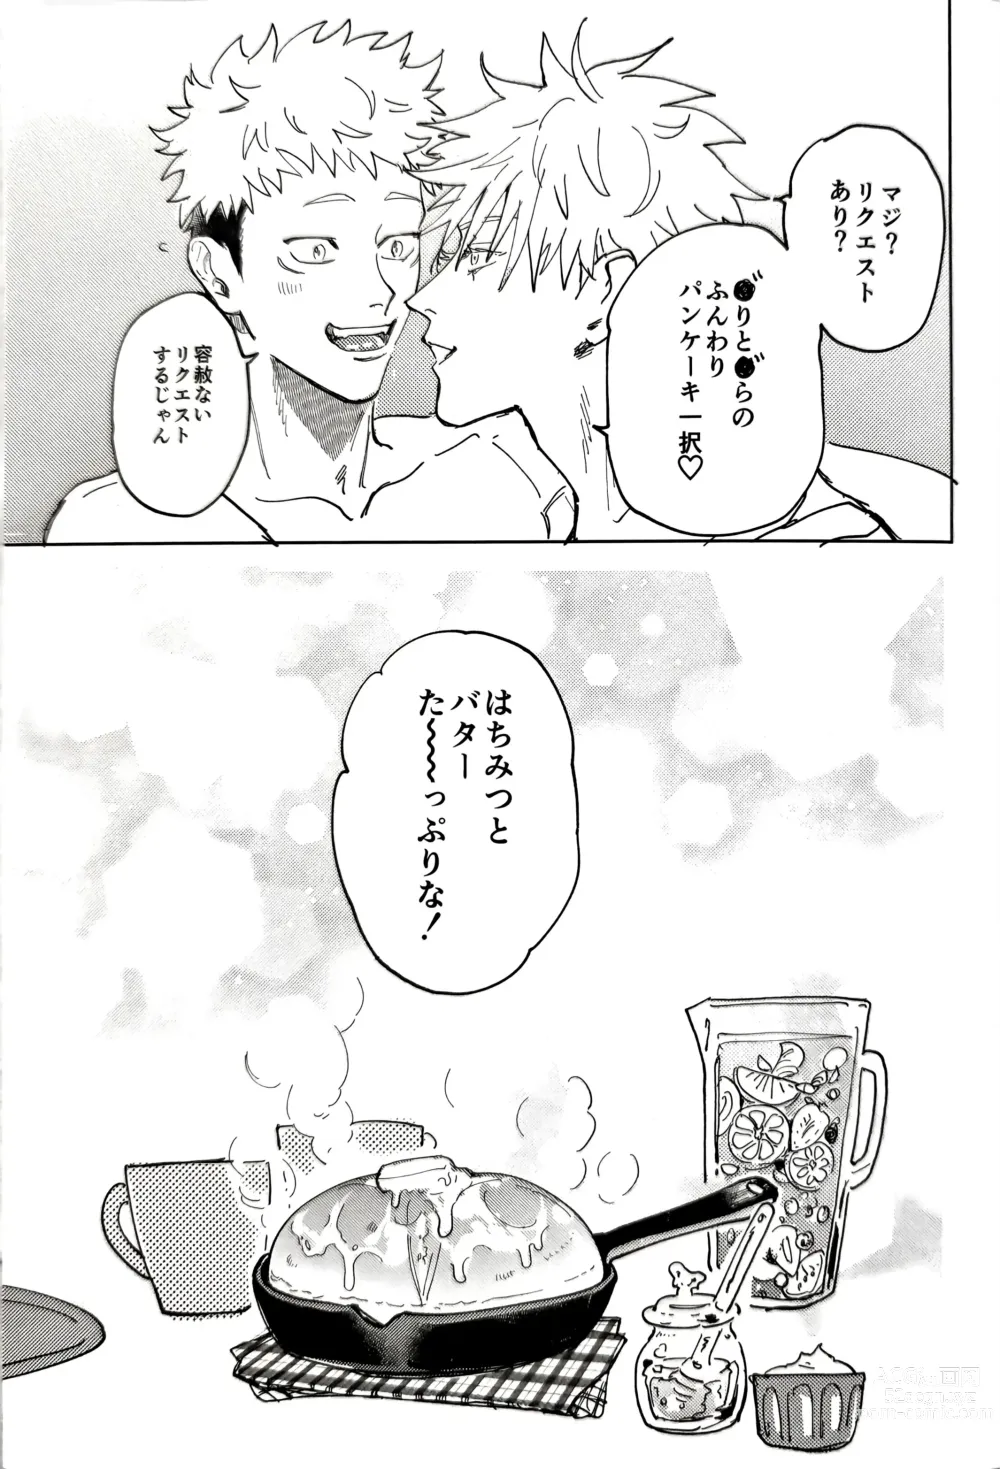 Page 30 of doujinshi Sore ga Aitte Yatsu desho - the prostate orgasm